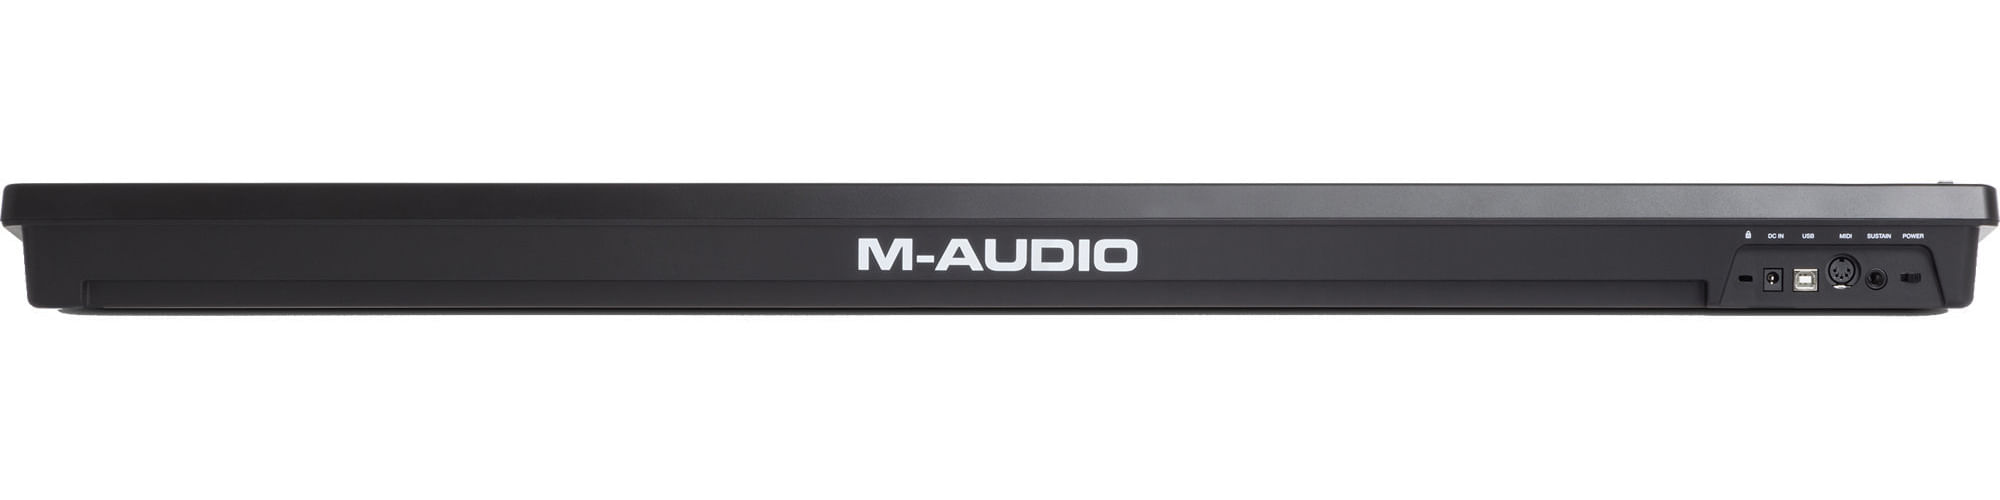 M-Audio Keystation 61 MK3 61-key Keyboard Controller